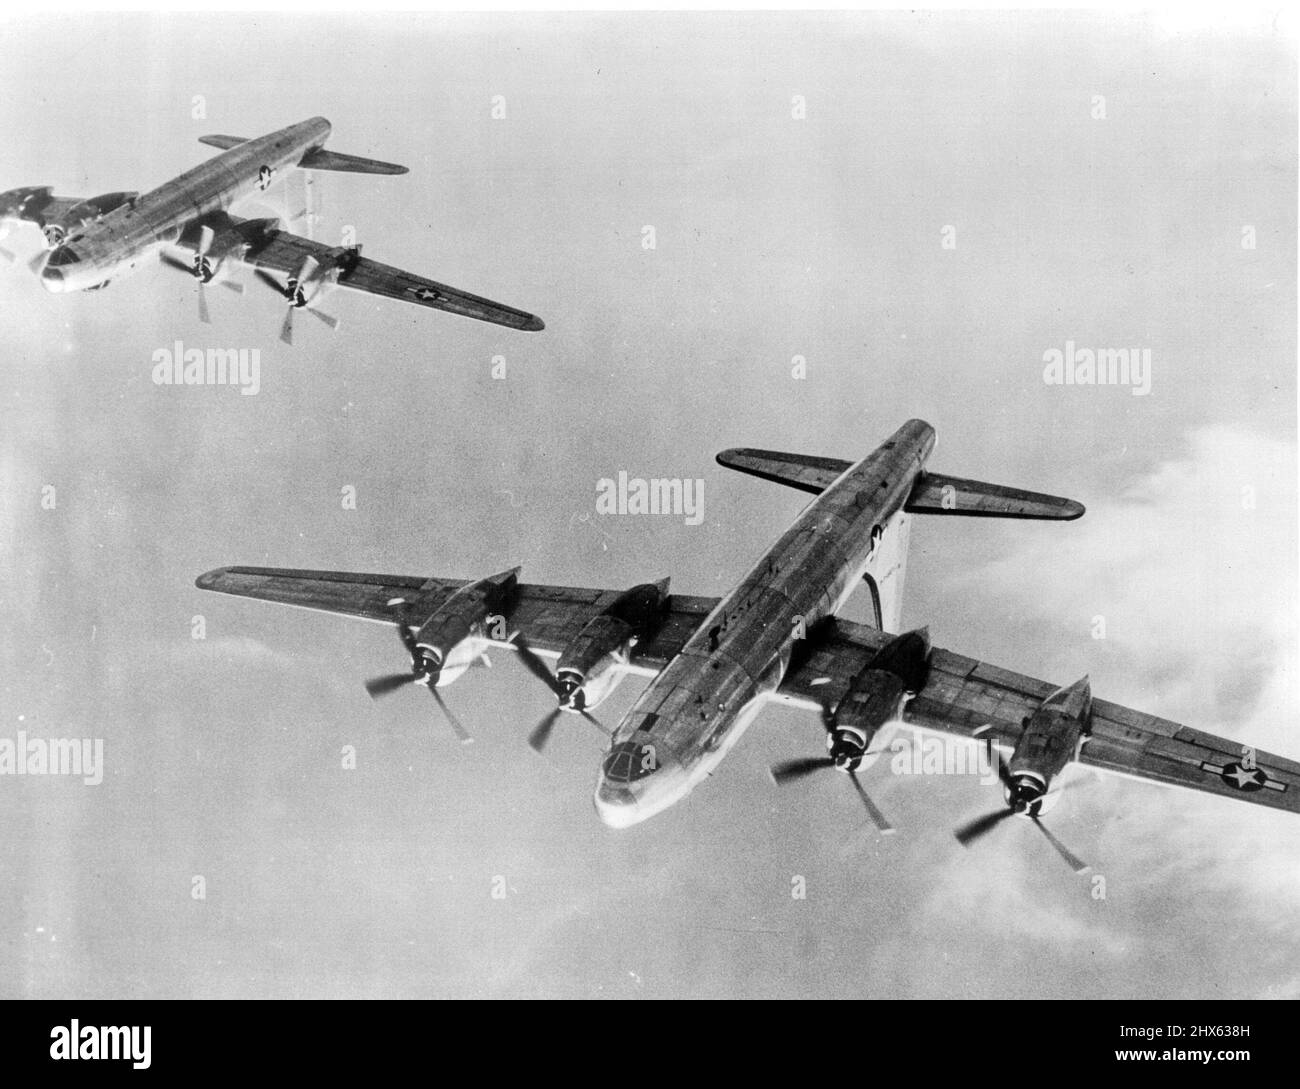 Vol en première formation de nouveaux SuperBombers américains. Il s'agit de la première photo de vol en formation du B-32, le superbaviateur américain, qui est maintenant en train d'être déployé, à partir des lignes de montage des usines de Consolidated Vultee Aircraft Corporation aux États-Unis. Le vaisseau à quatre moteurs de longue portée, qui coordonnera ses attaques avec celles des B-29 Superforteresses lors du bombardement de cibles militaires et industrielles japonaises, mesure 83 mètres de long et son aile basse traînée a une portée de 135 pieds. Capable de voyager à plus de 300 Banque D'Images